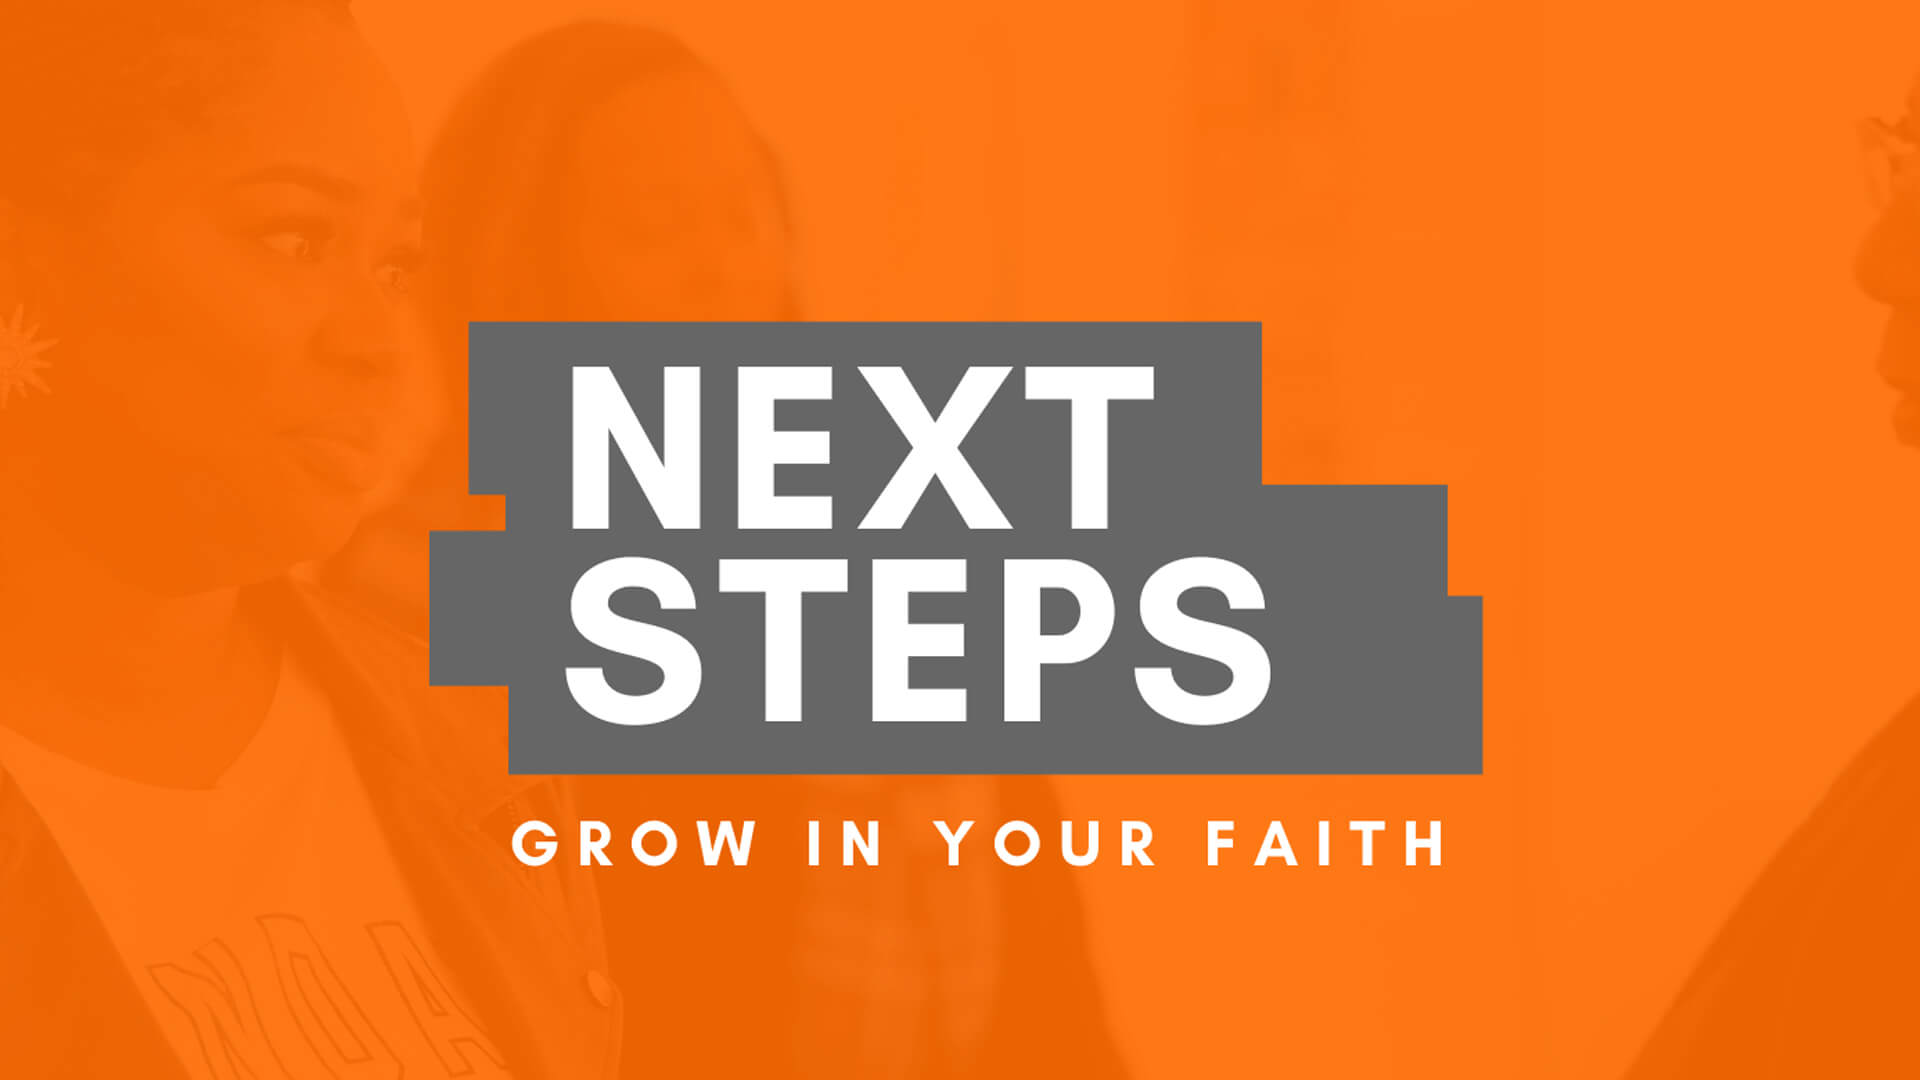 Next Steps - Grow in Your Faith